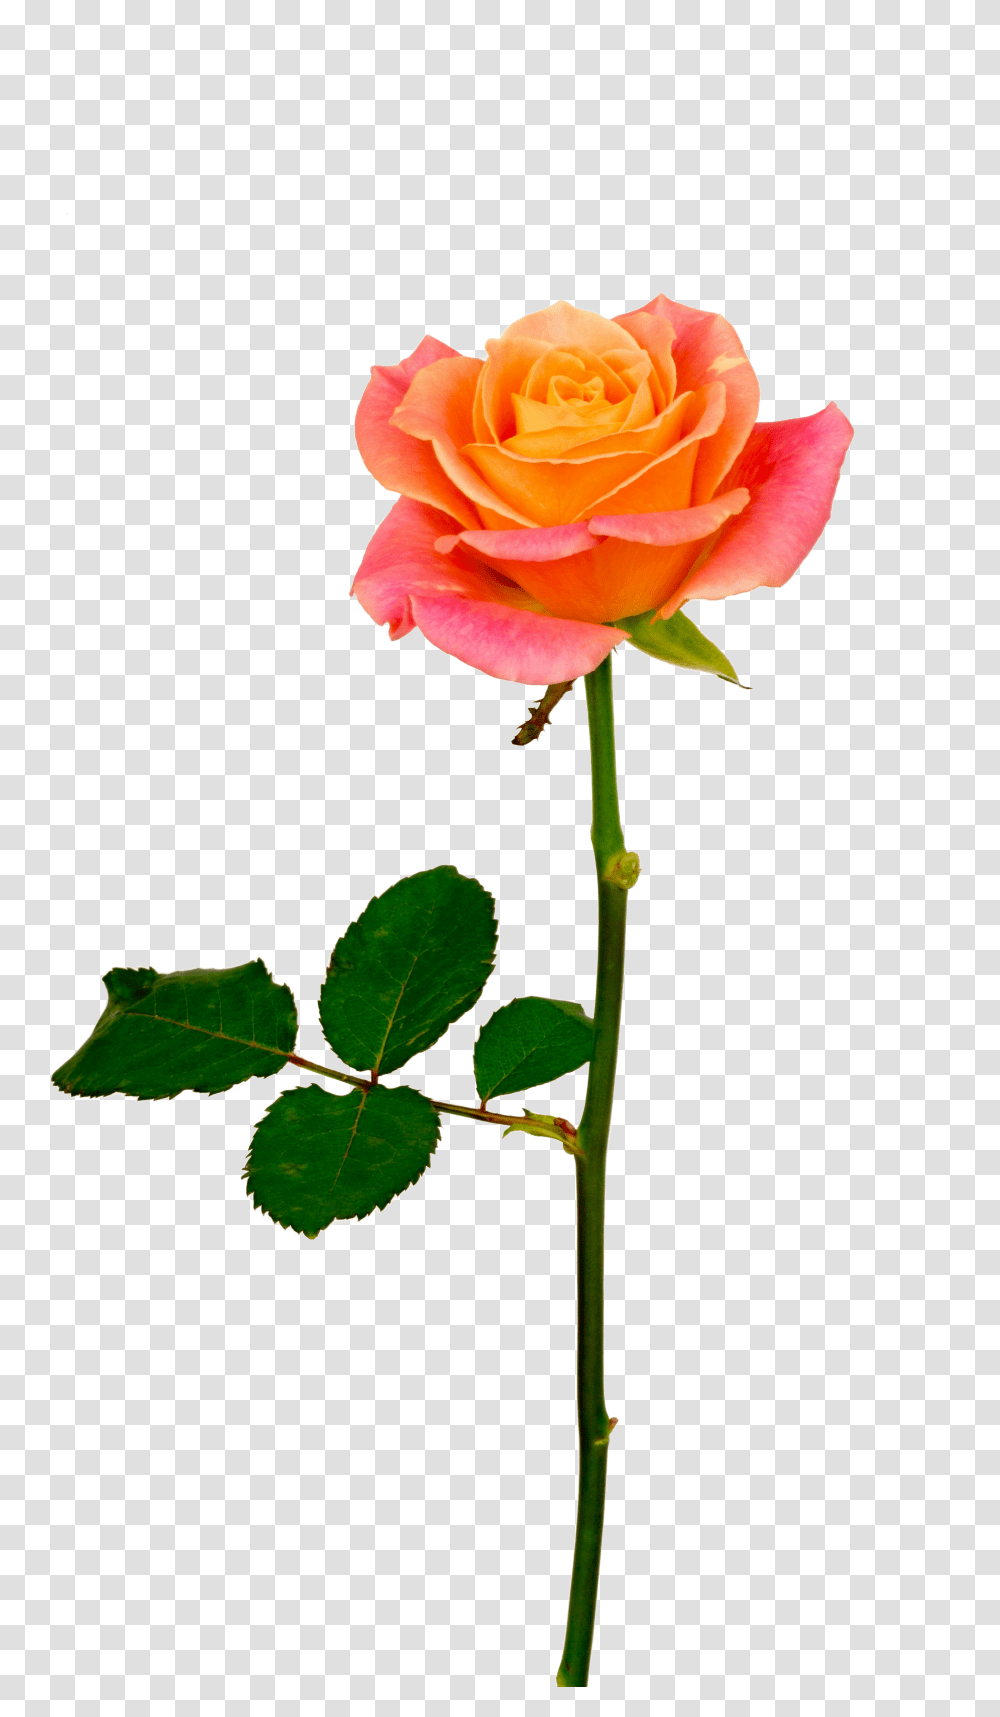 Background V50 600x736 S Resolution Orange Roses Orange Rose With Stem, Flower, Plant, Blossom, Petal Transparent Png